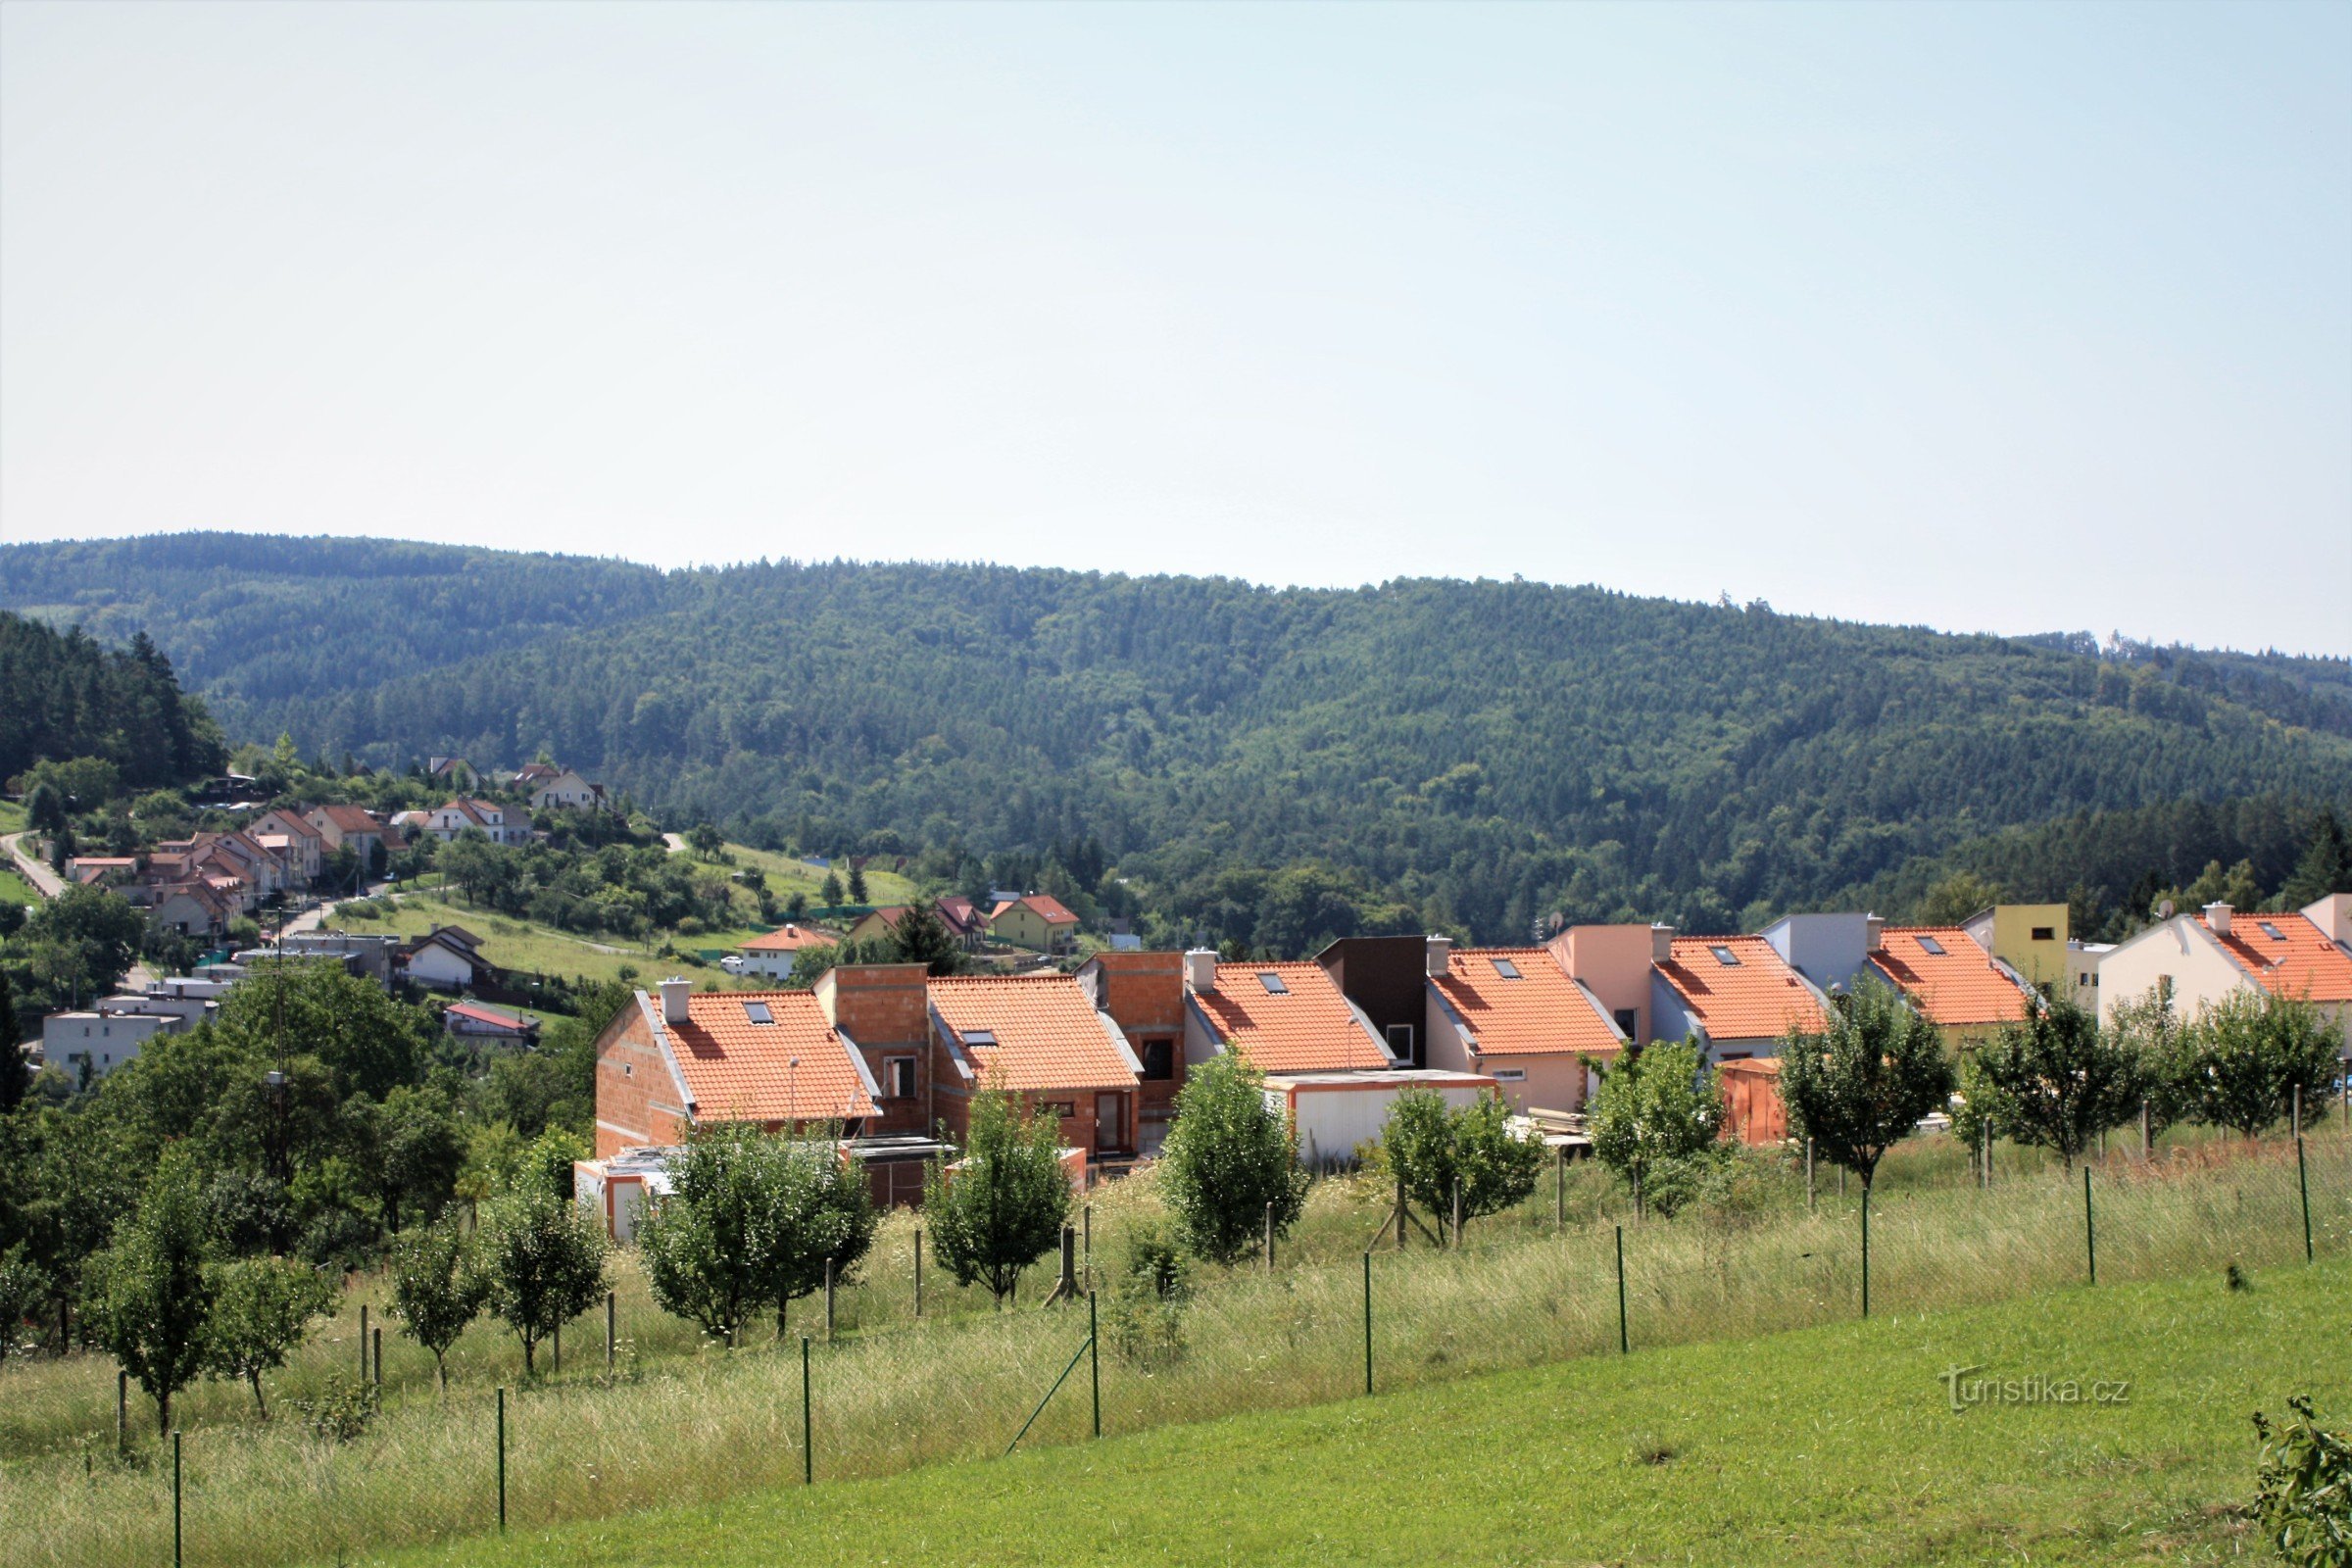 Utsikt över de nya husen i Kanice till sammanflödet av Kanické potok och Časnýra